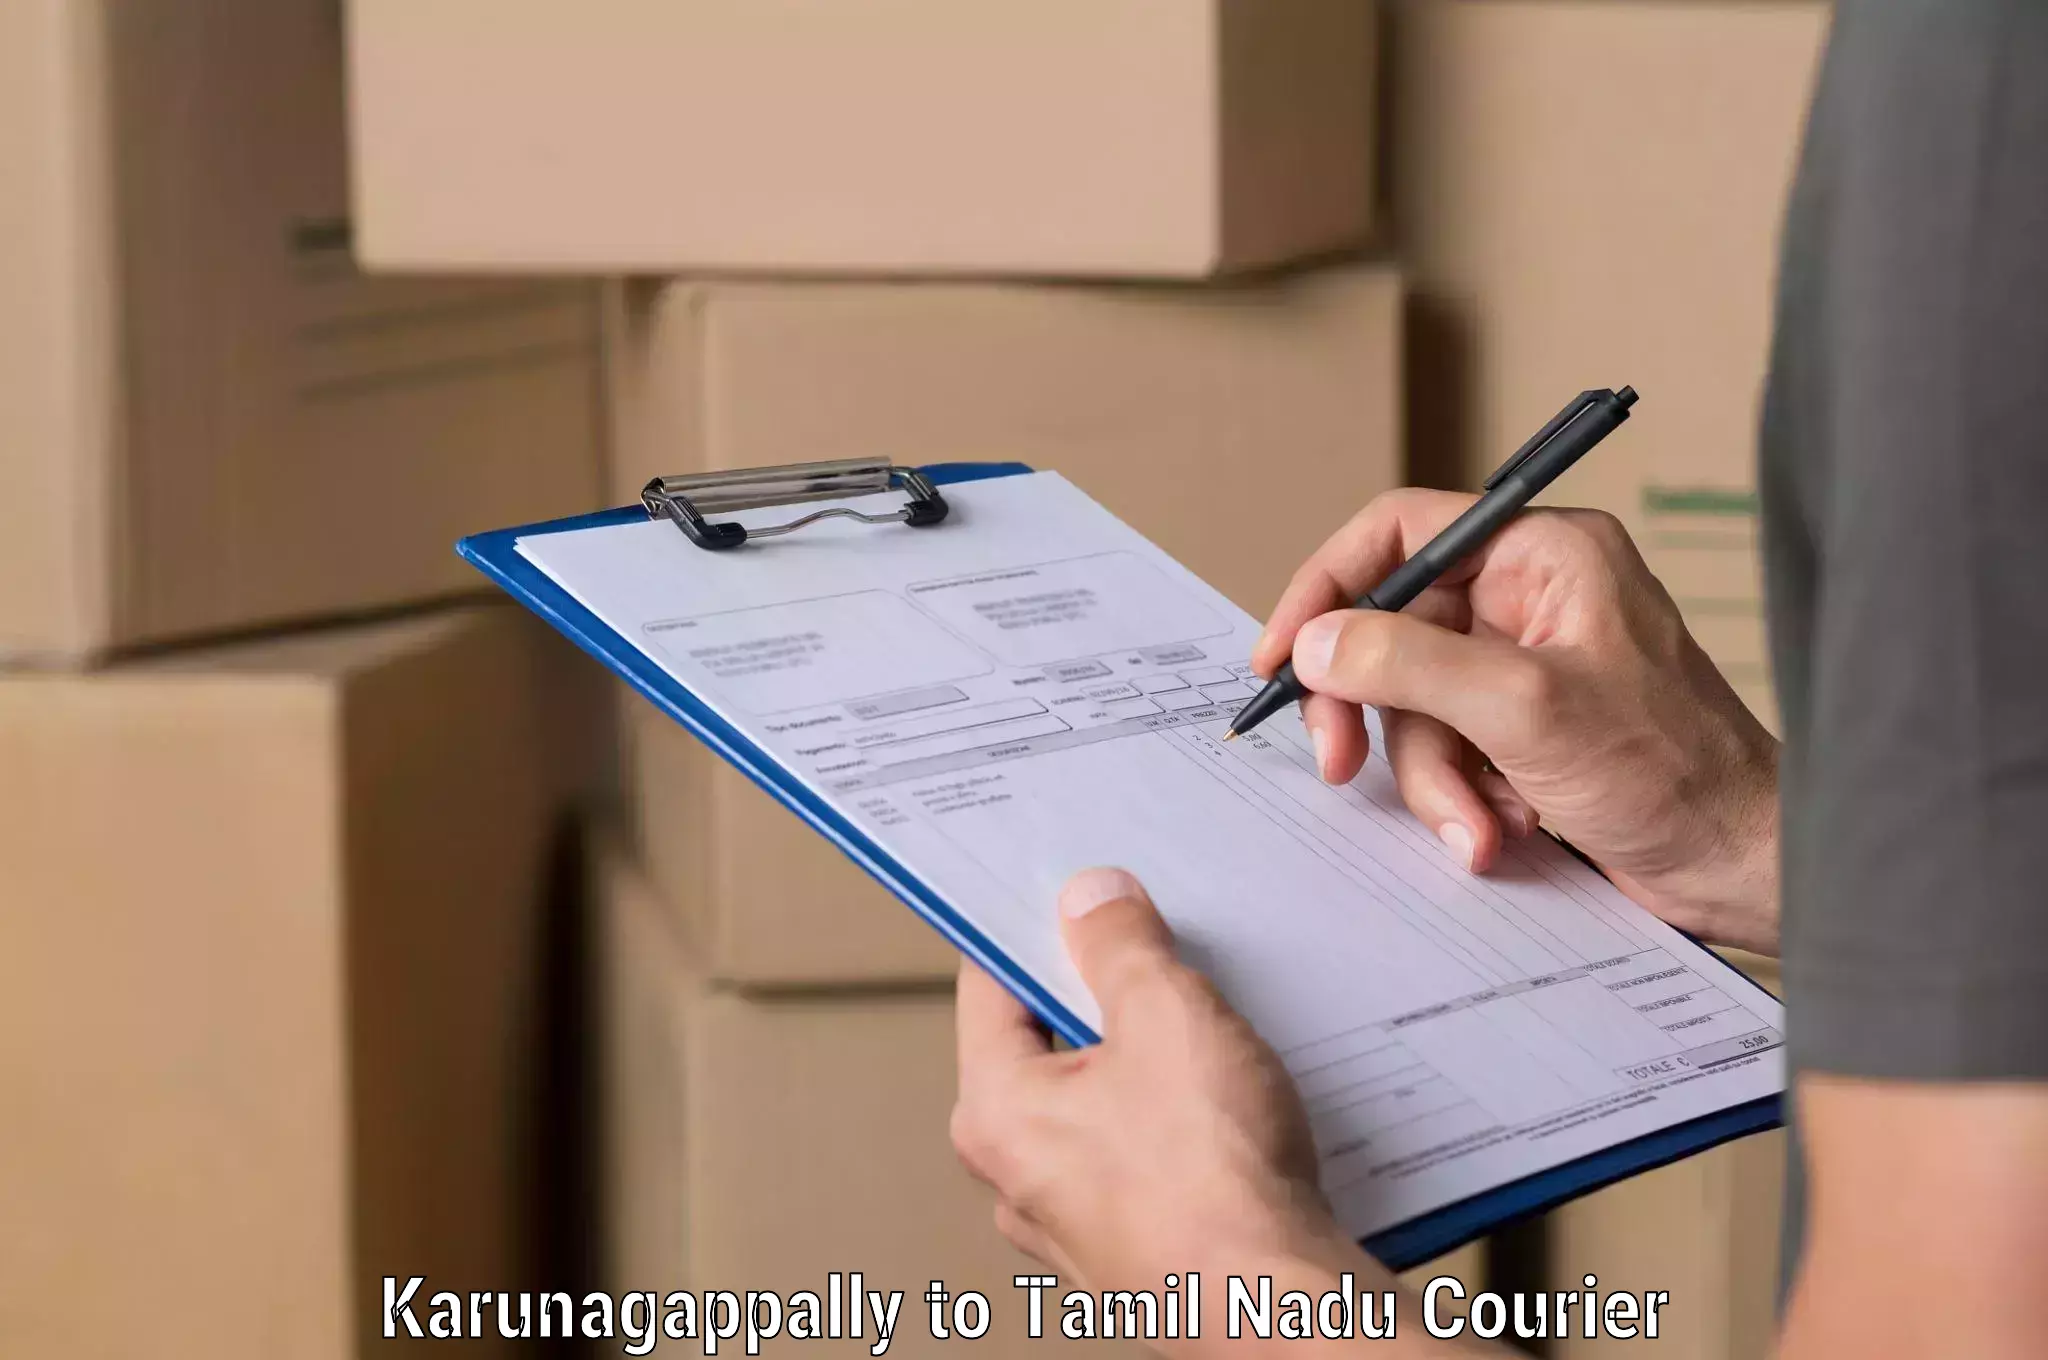 Next-generation courier services in Karunagappally to Perambur